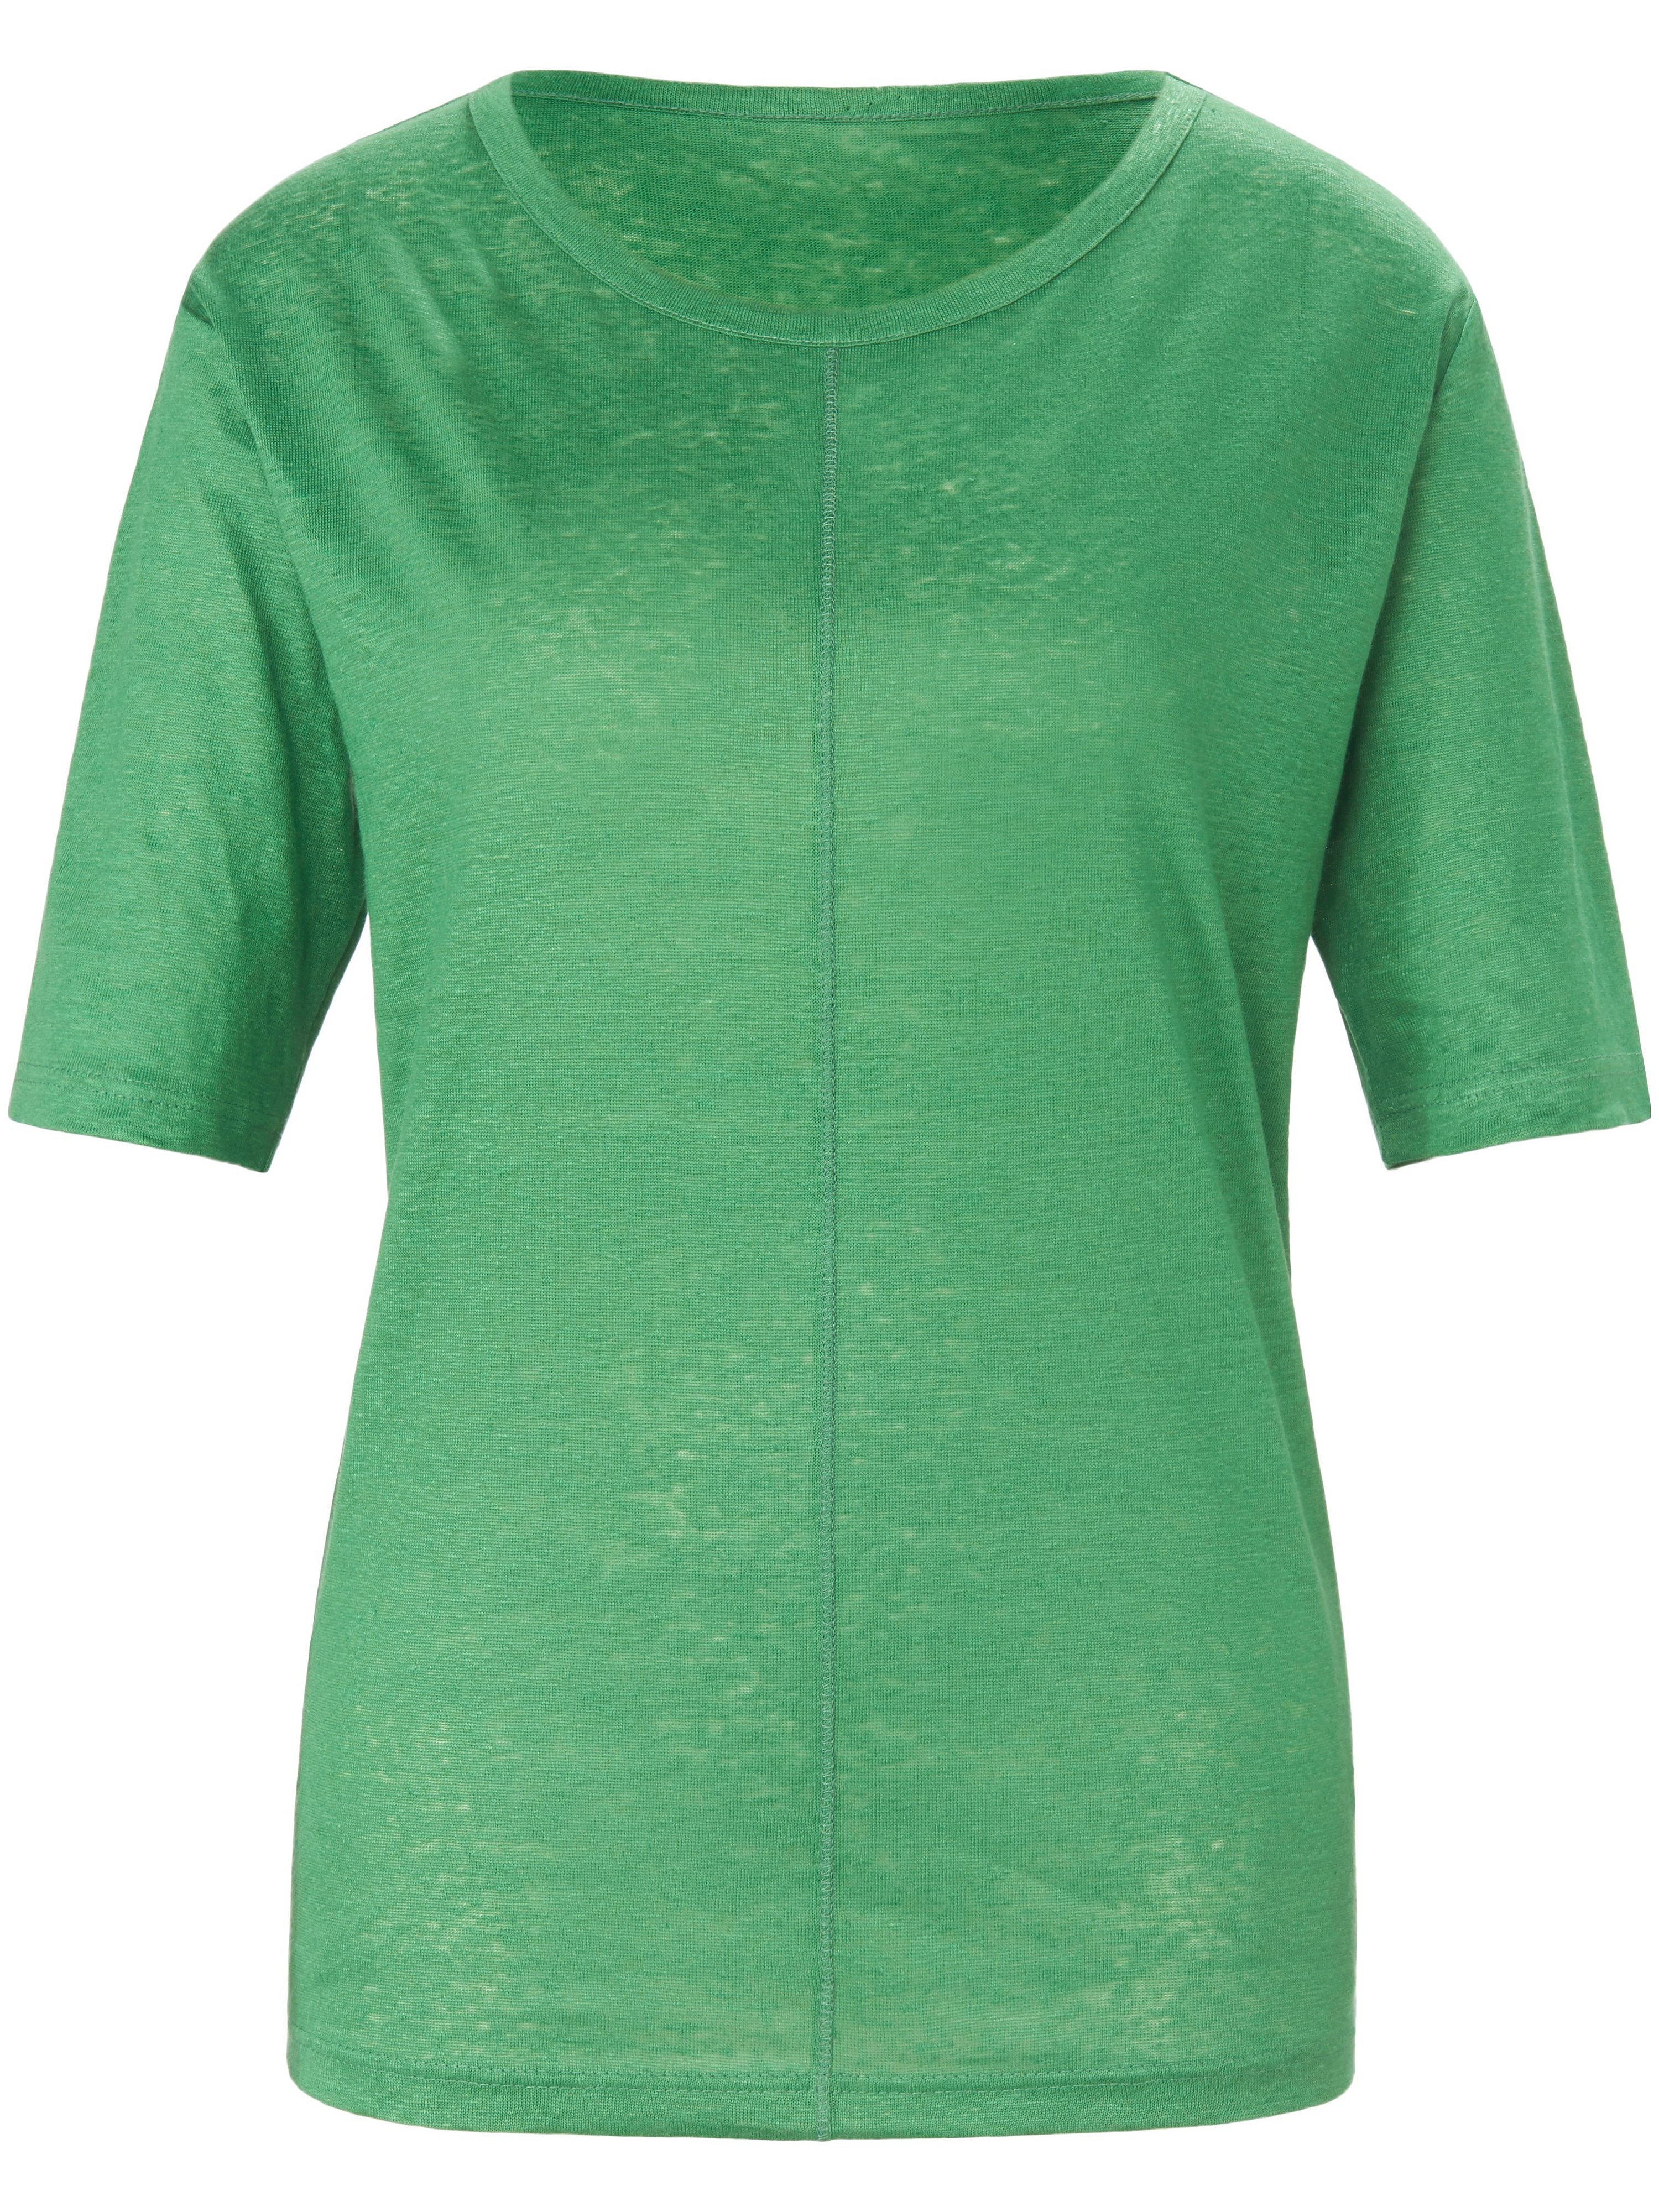 Le T-shirt 100% lin  St. Emile vert taille 40